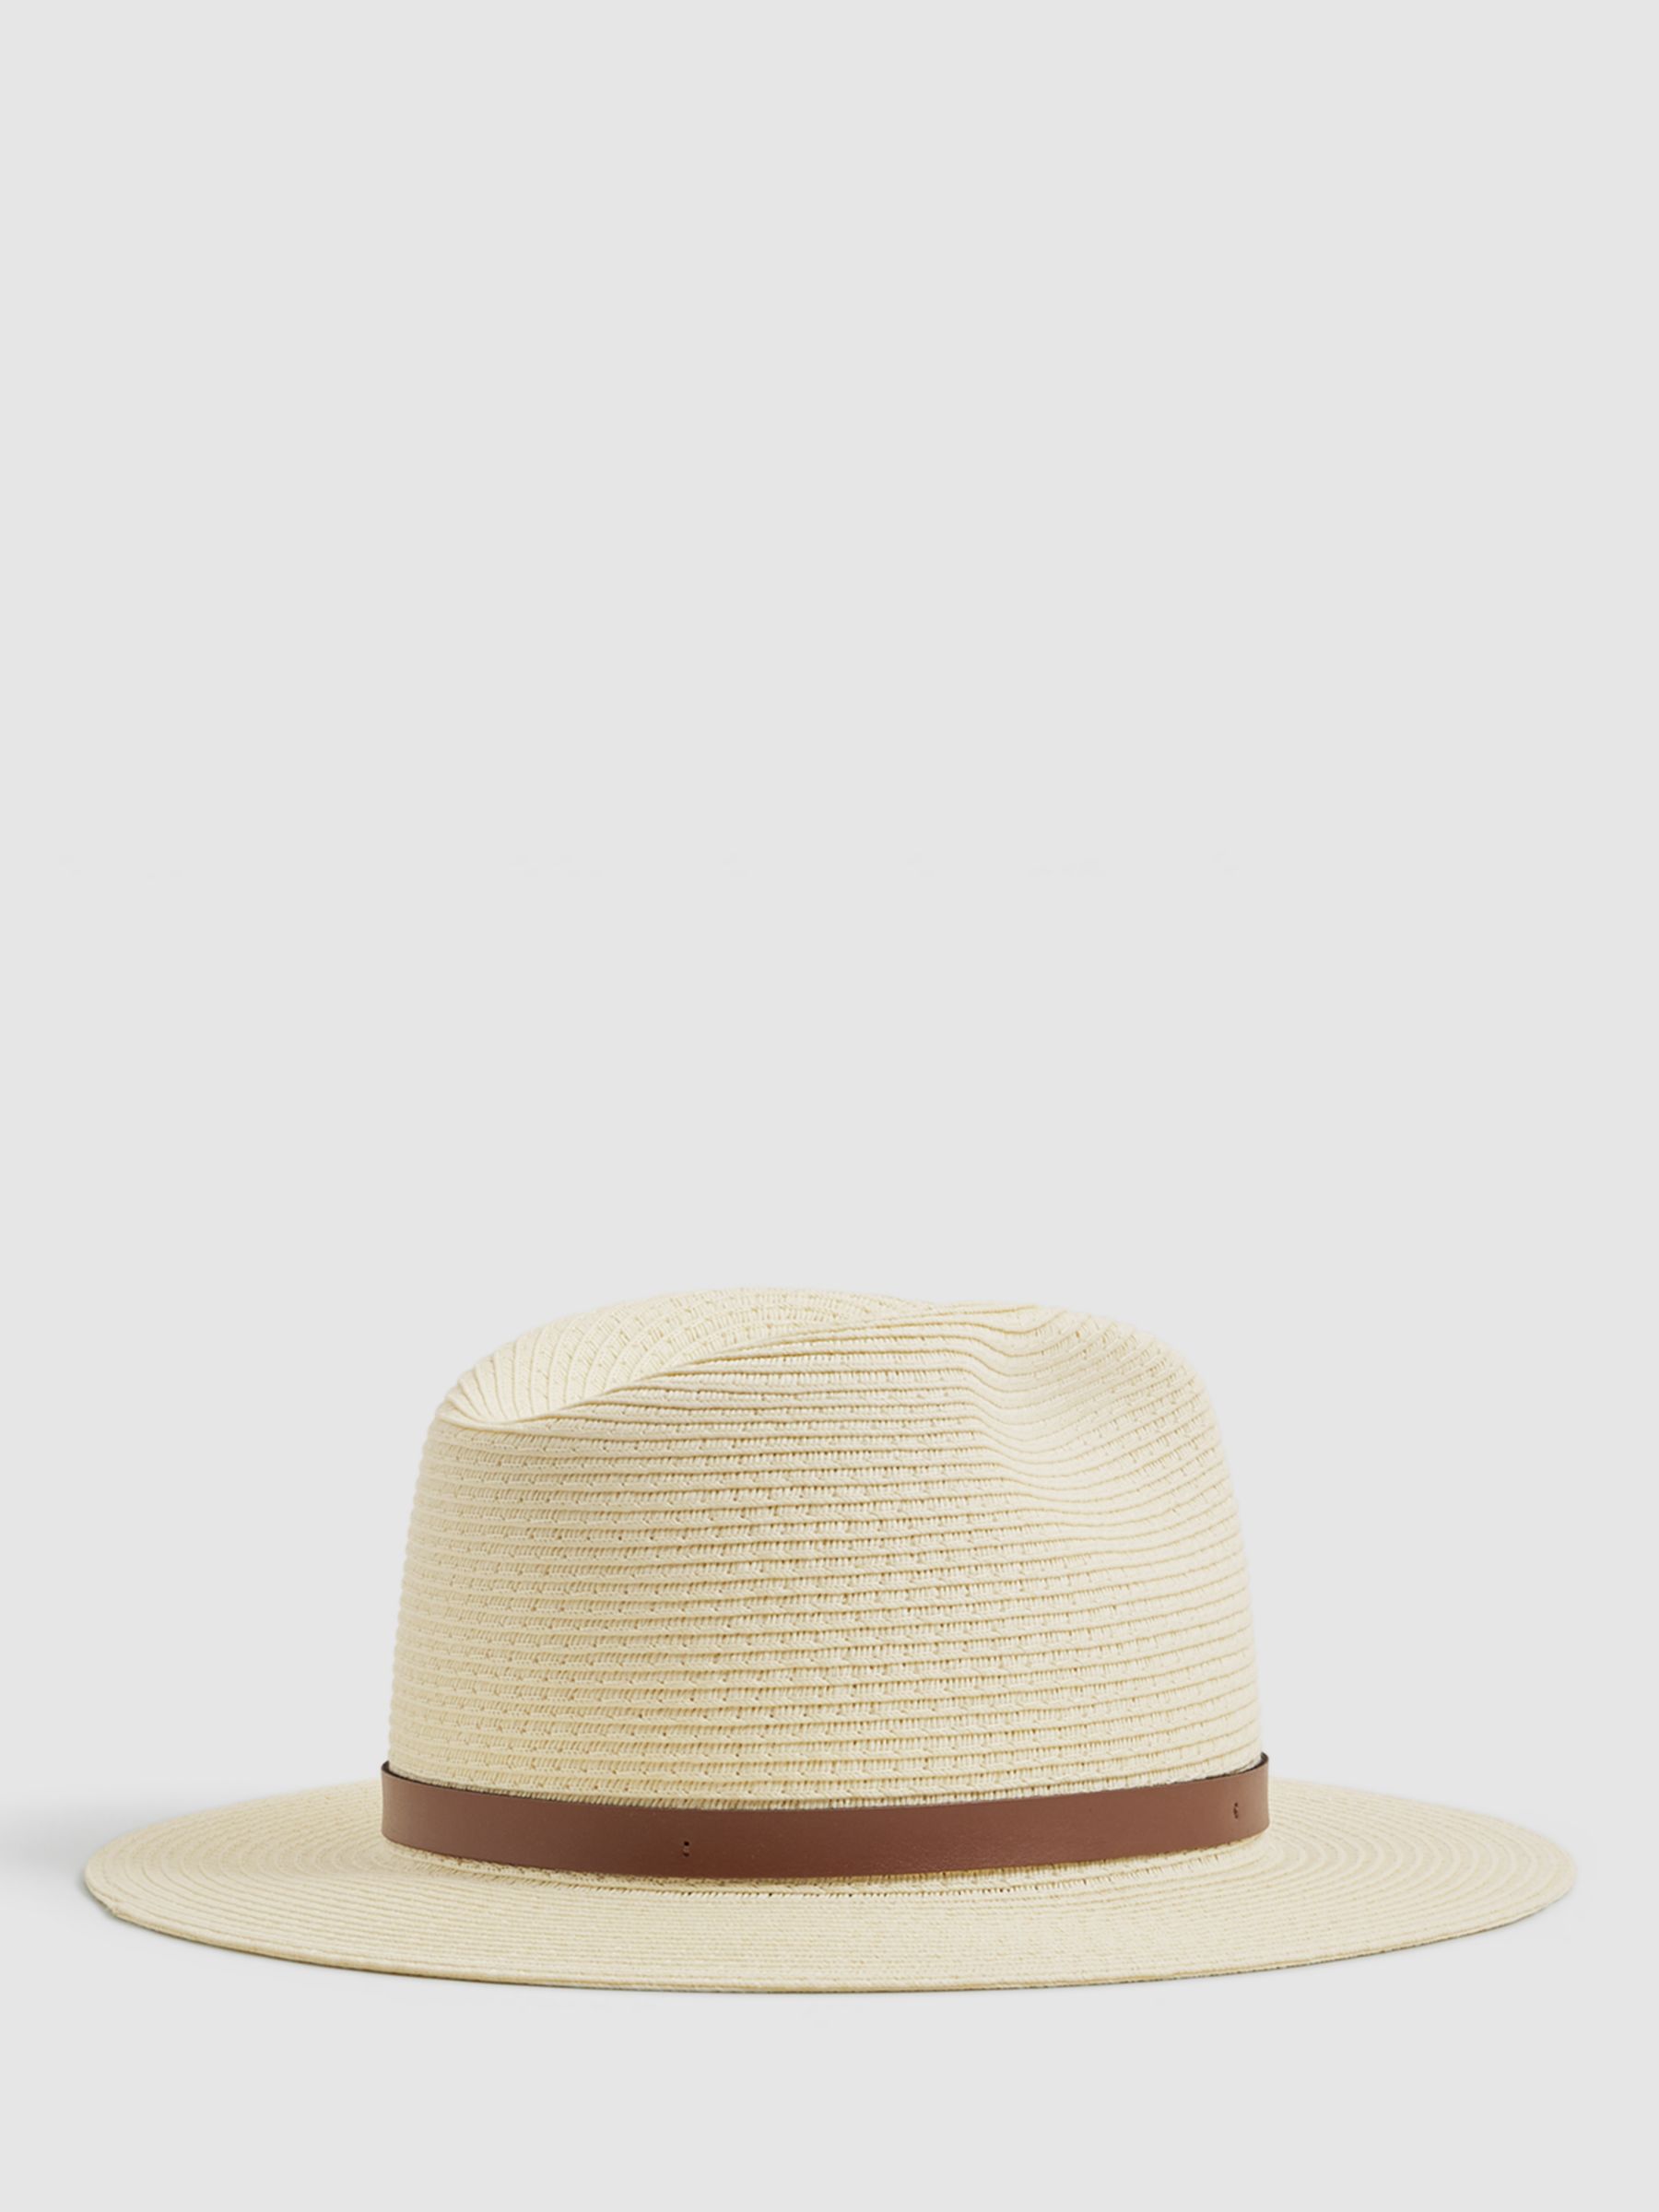 Reiss Gigi Paper Straw Sun Hat, Natural, M-L